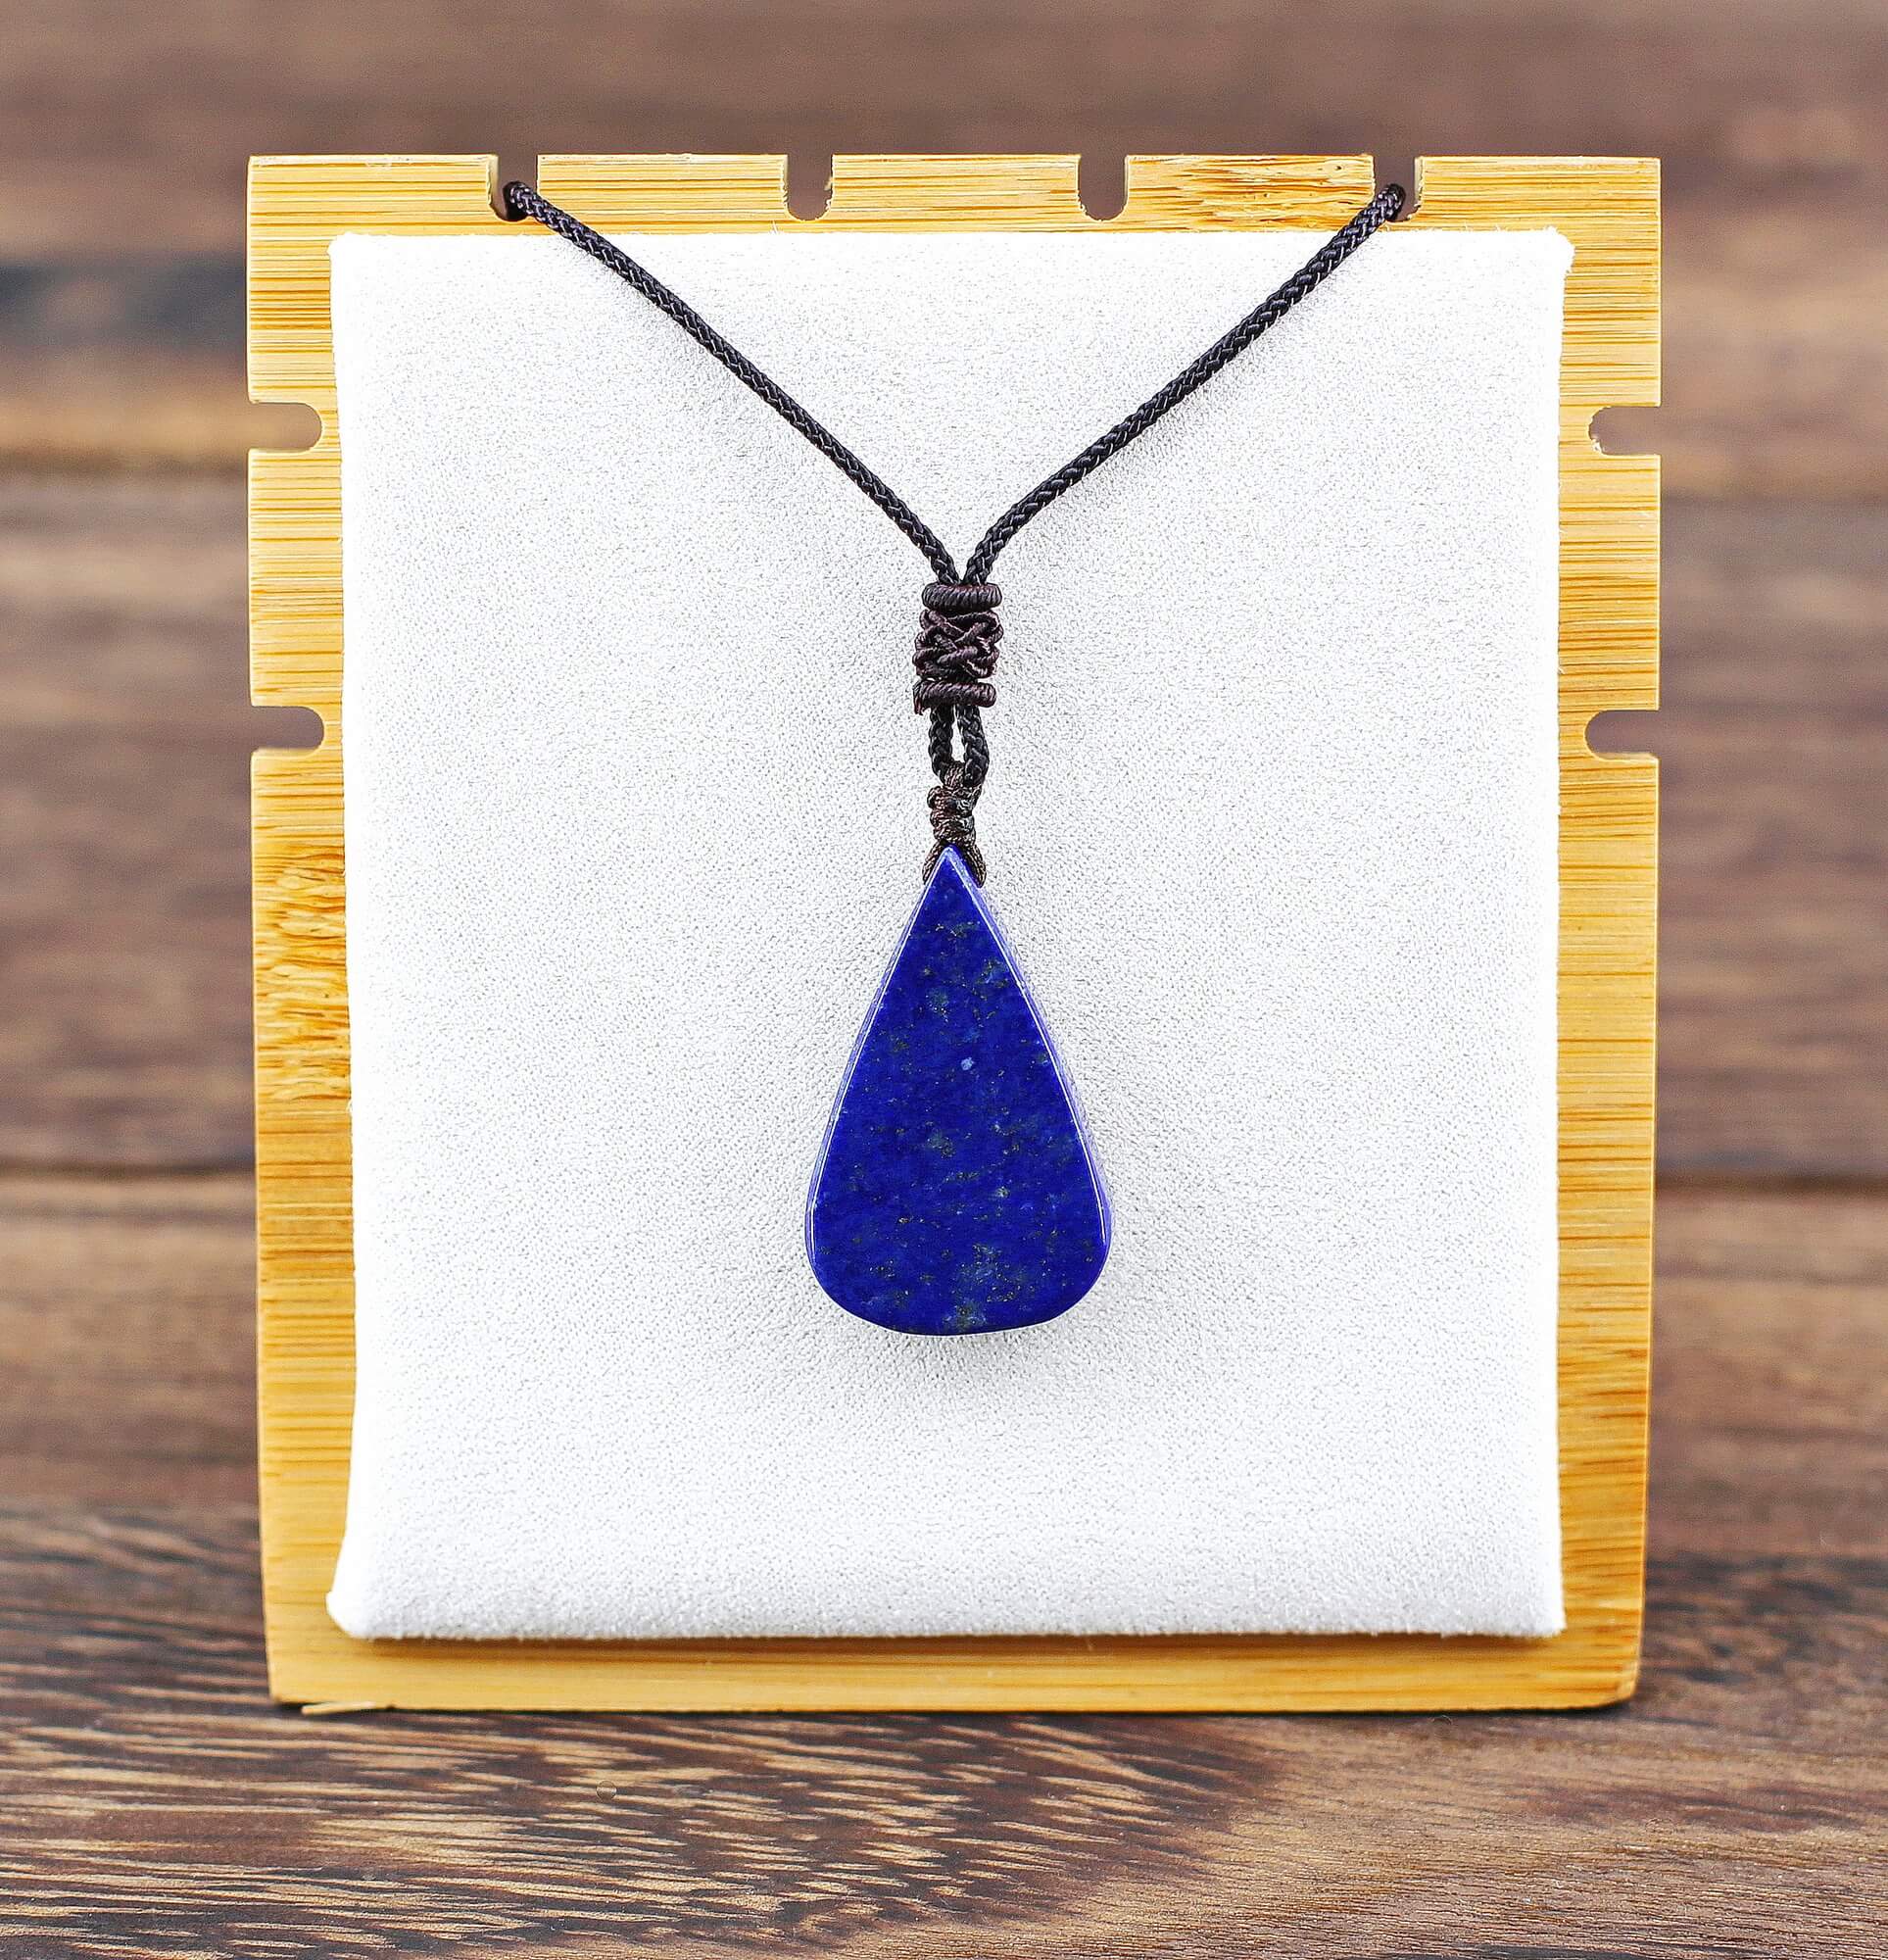 Taillé en pétale, ce bijou de précieux Lapis Lazuli "Qualité AA", vous séduira par sa forte présence inspirante autant que par sa simplicité. Au travers du mythique Lapis Lazuli, les voyages mentaux prennent vite la couleur des contes des Mille-et-une Nui